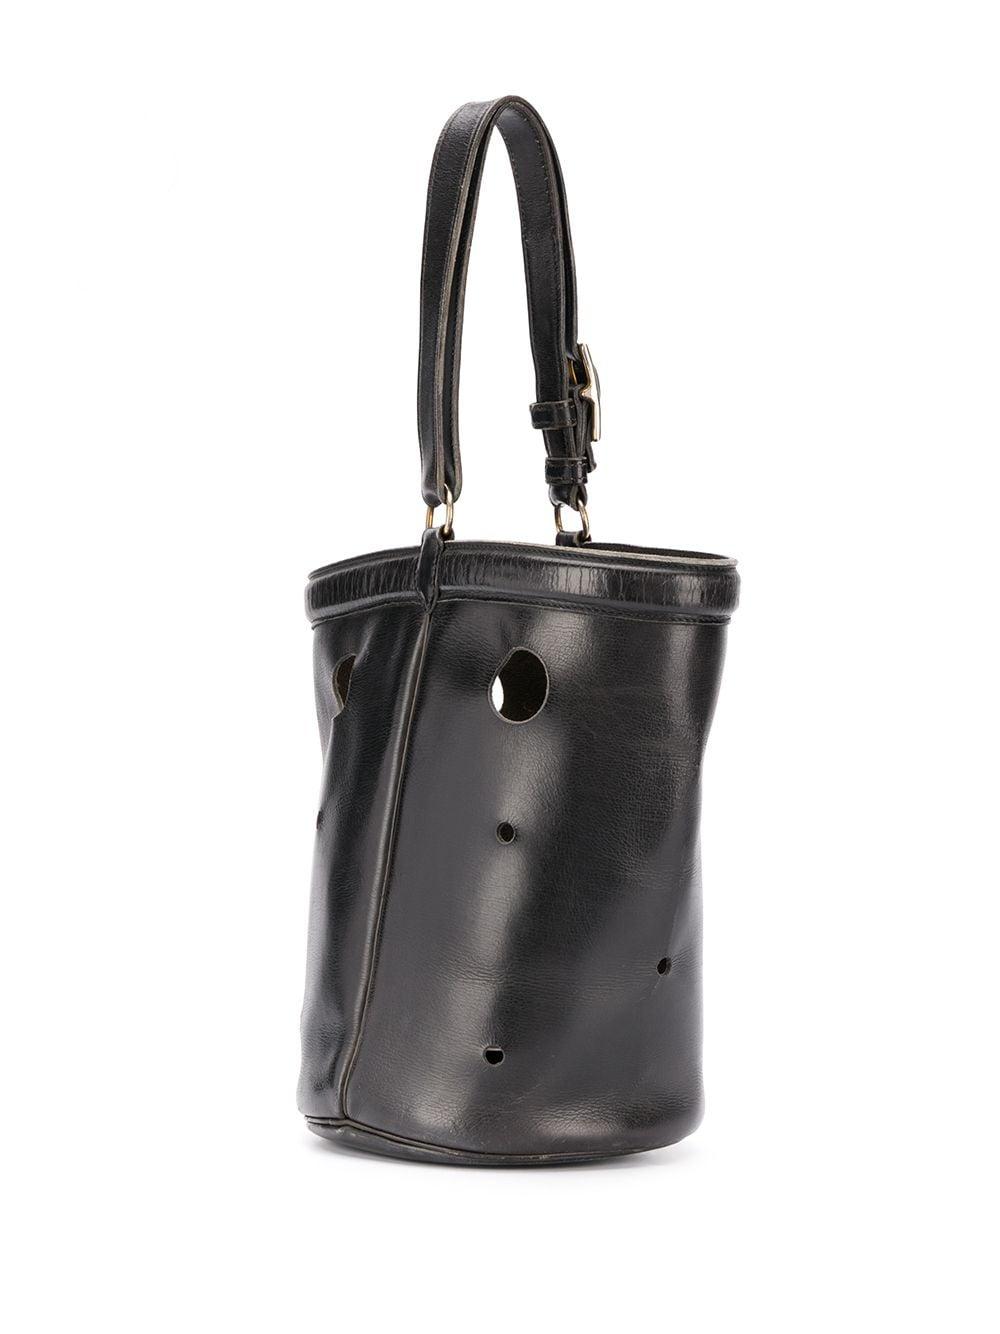 Hermès 1960s Mangeoire Bucket Bag in Black